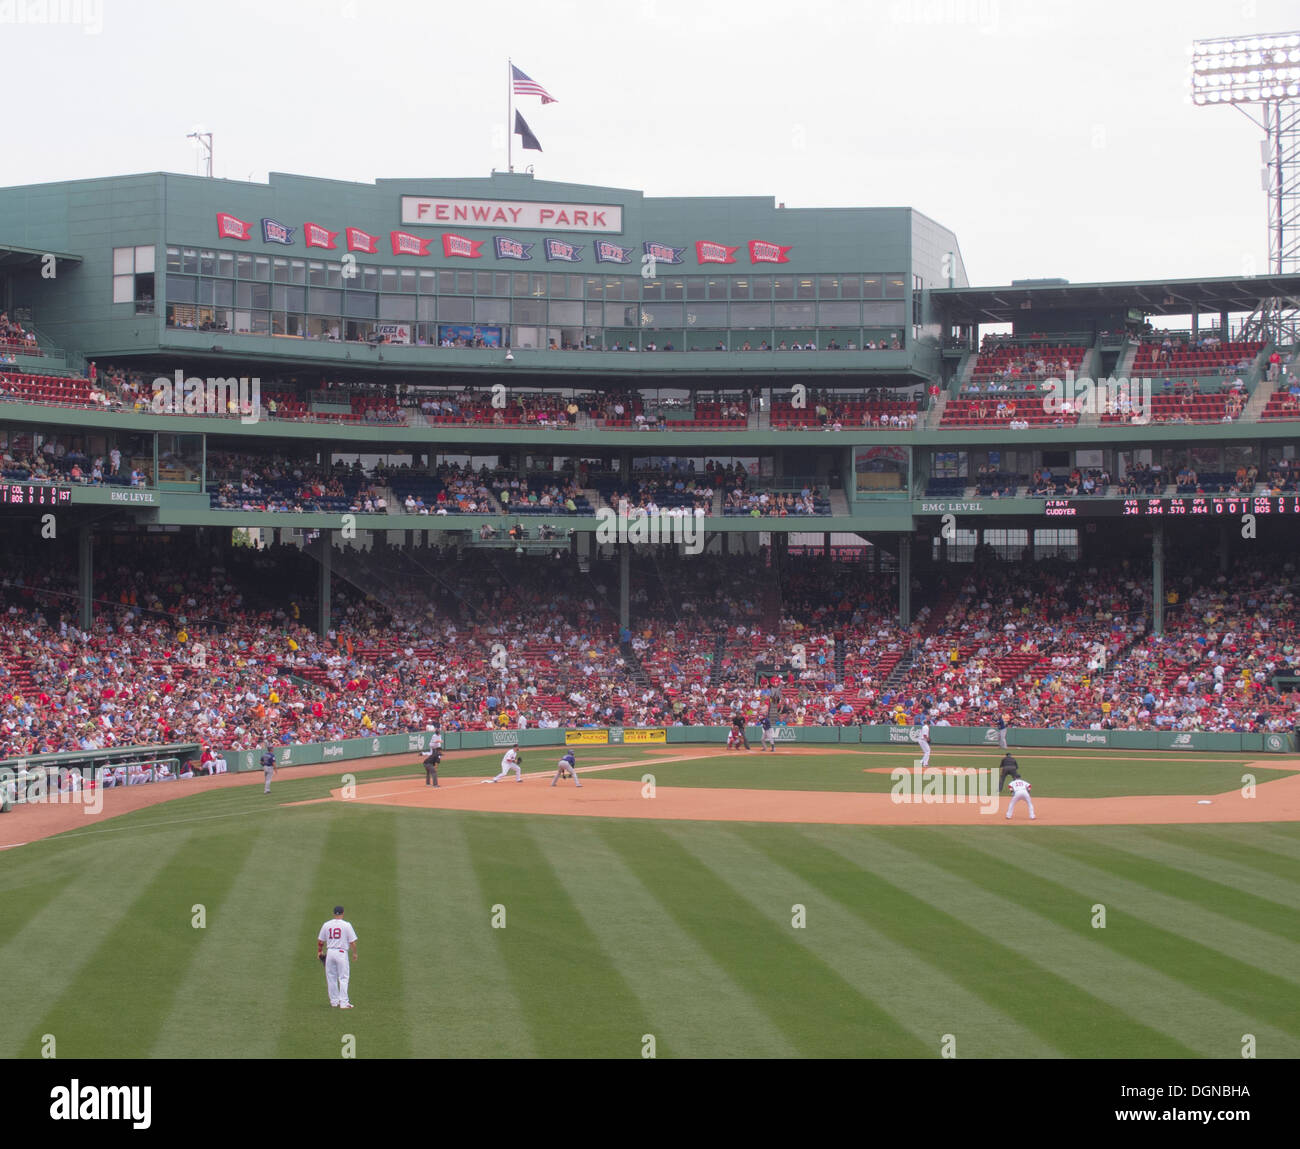 Game day al Fenway Park, casa dei Boston Red Sox baseball team a partire dal 2012. Il Boston Red Sox ha vinto il 2013 World Series. Foto Stock